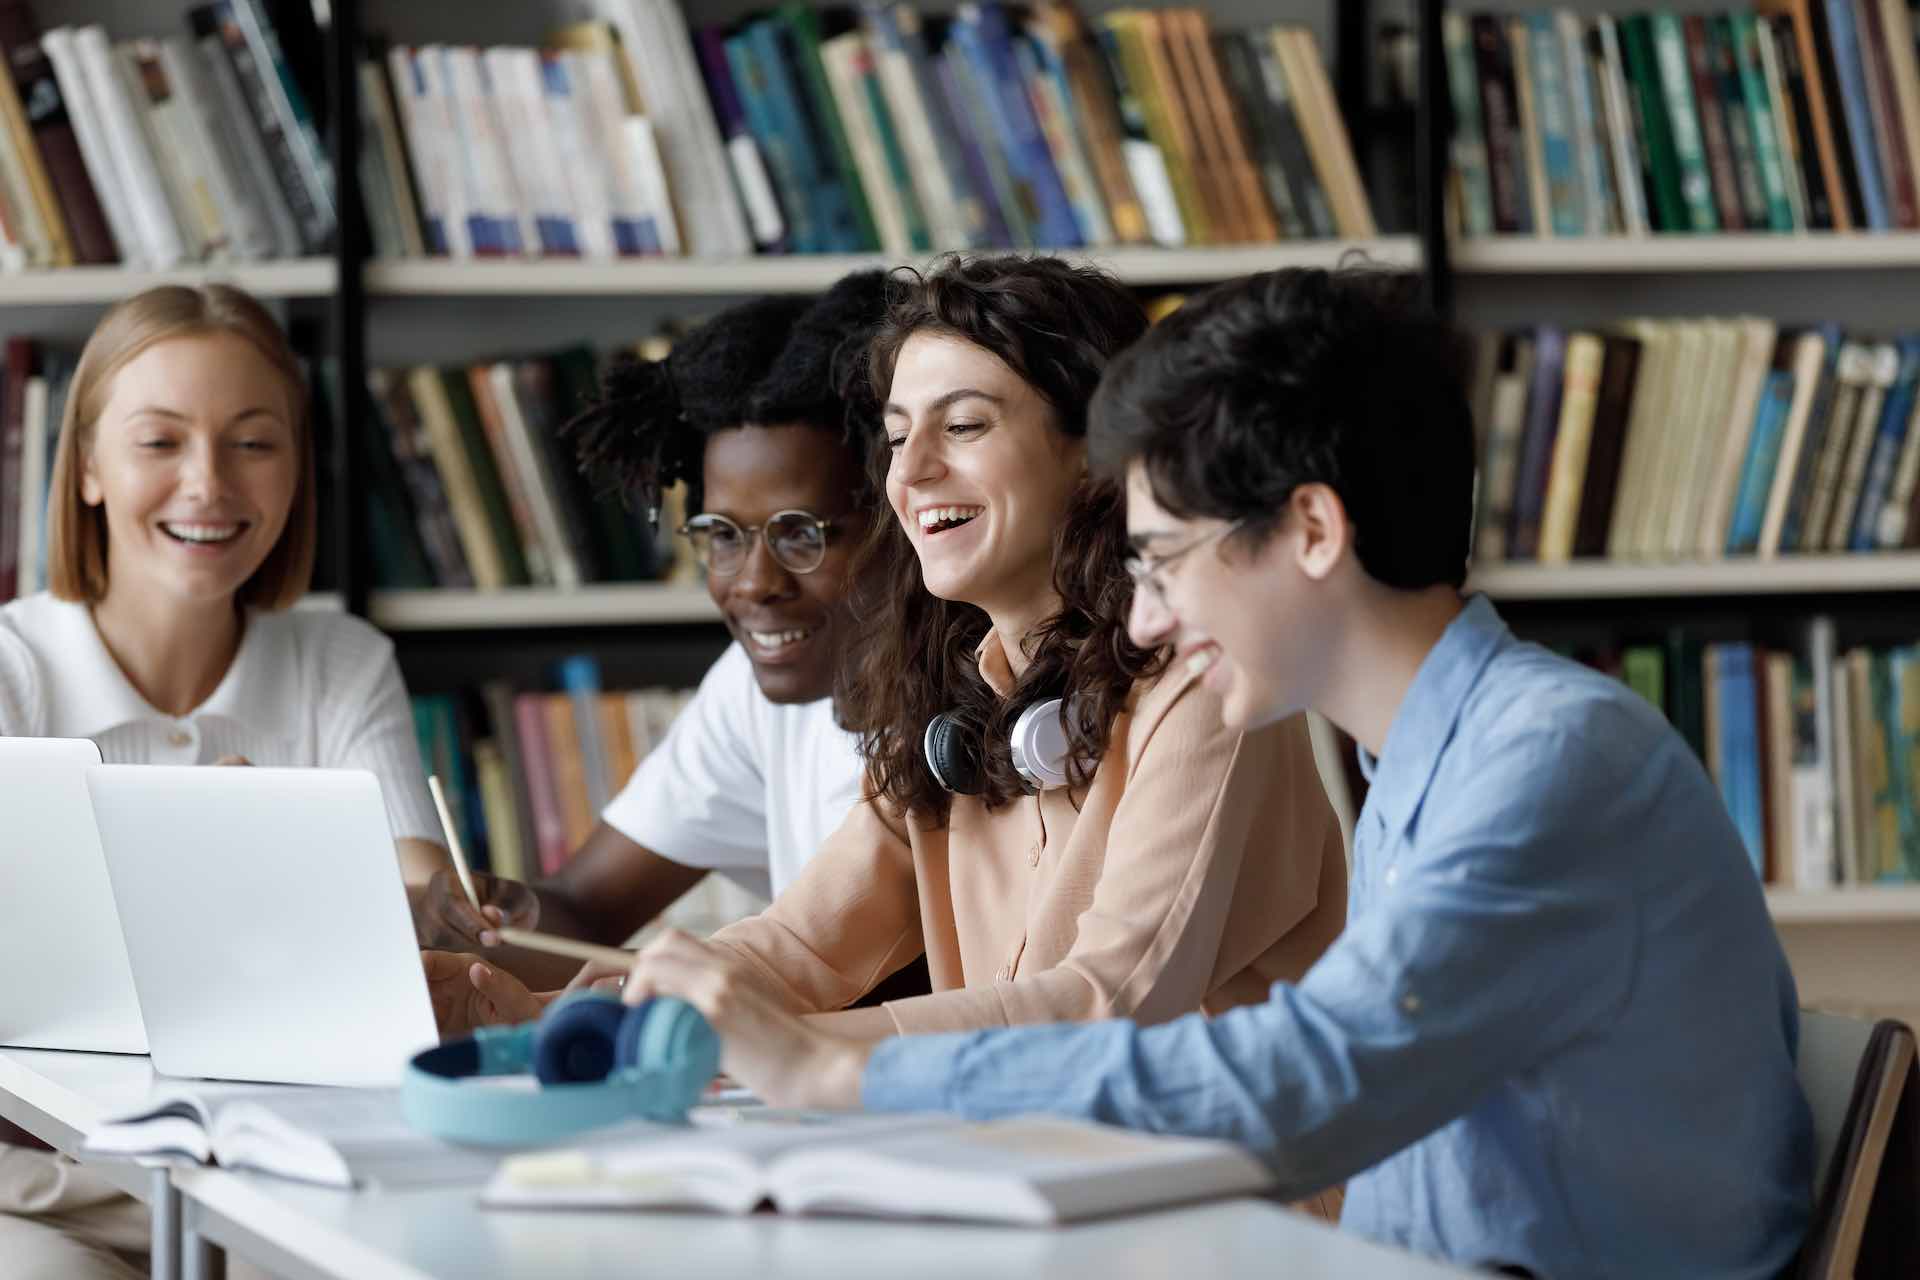 imagem mostra três jovens em frente a um computador, rindo; foto ilustra tecnologia